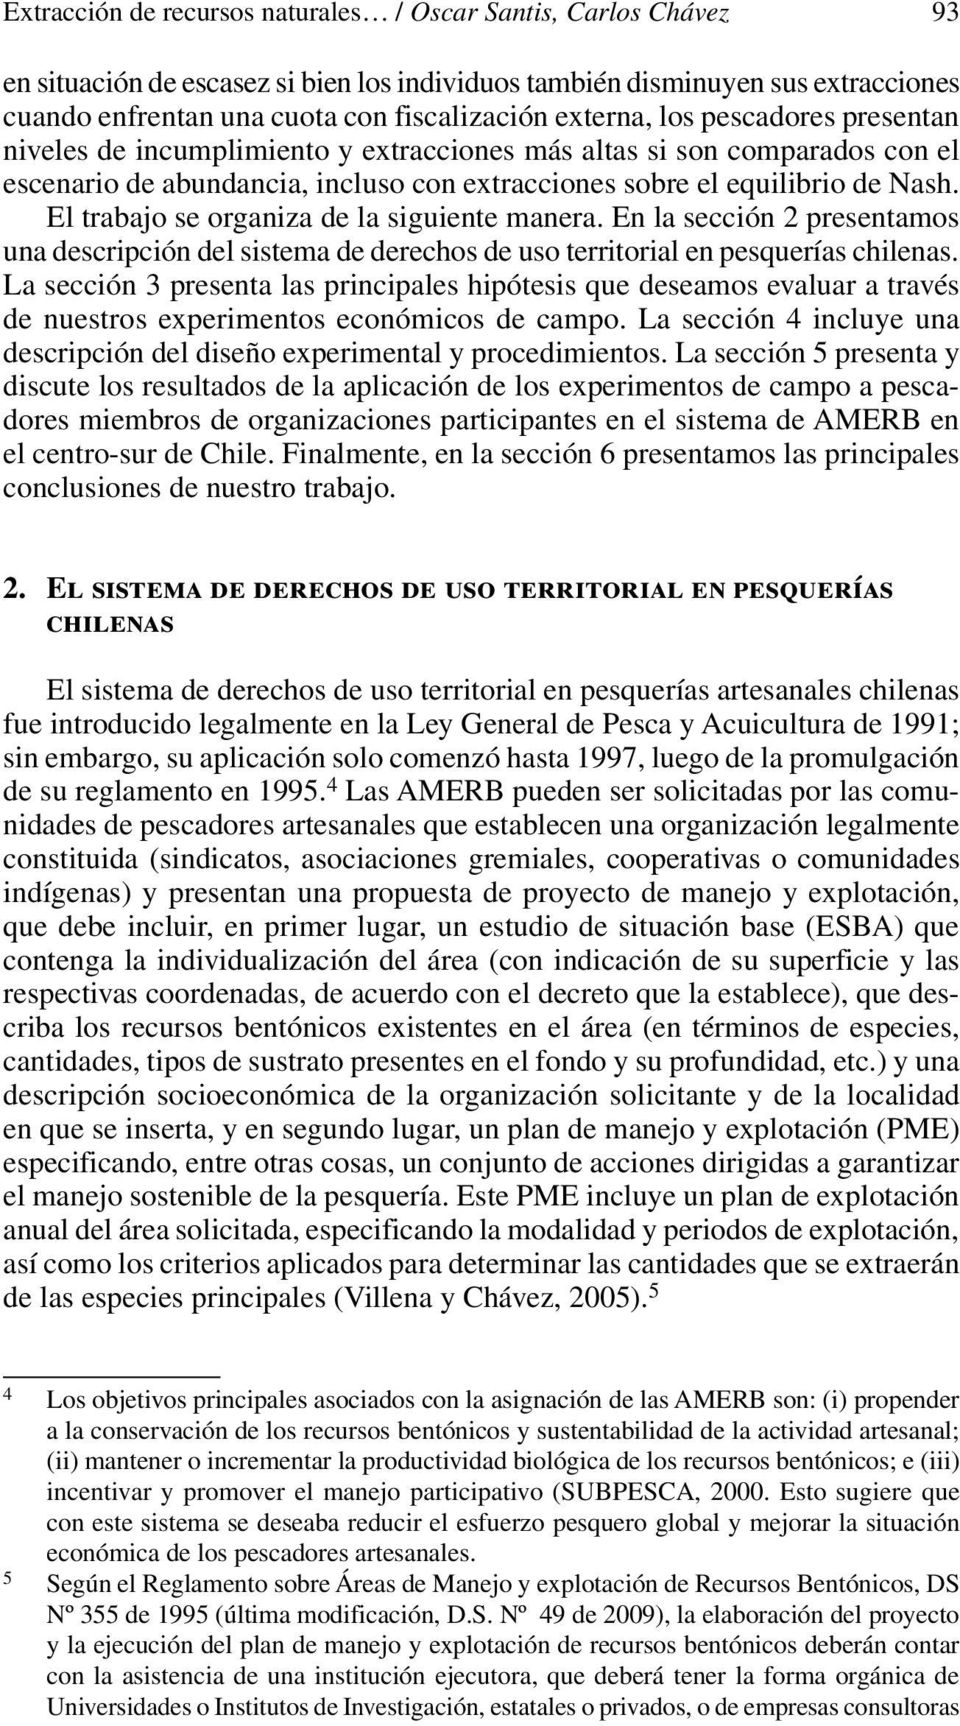 El trabajo se organiza de la siguiente manera. En la sección 2 presentamos una descripción del sistema de derechos de uso territorial en pesquerías chilenas.